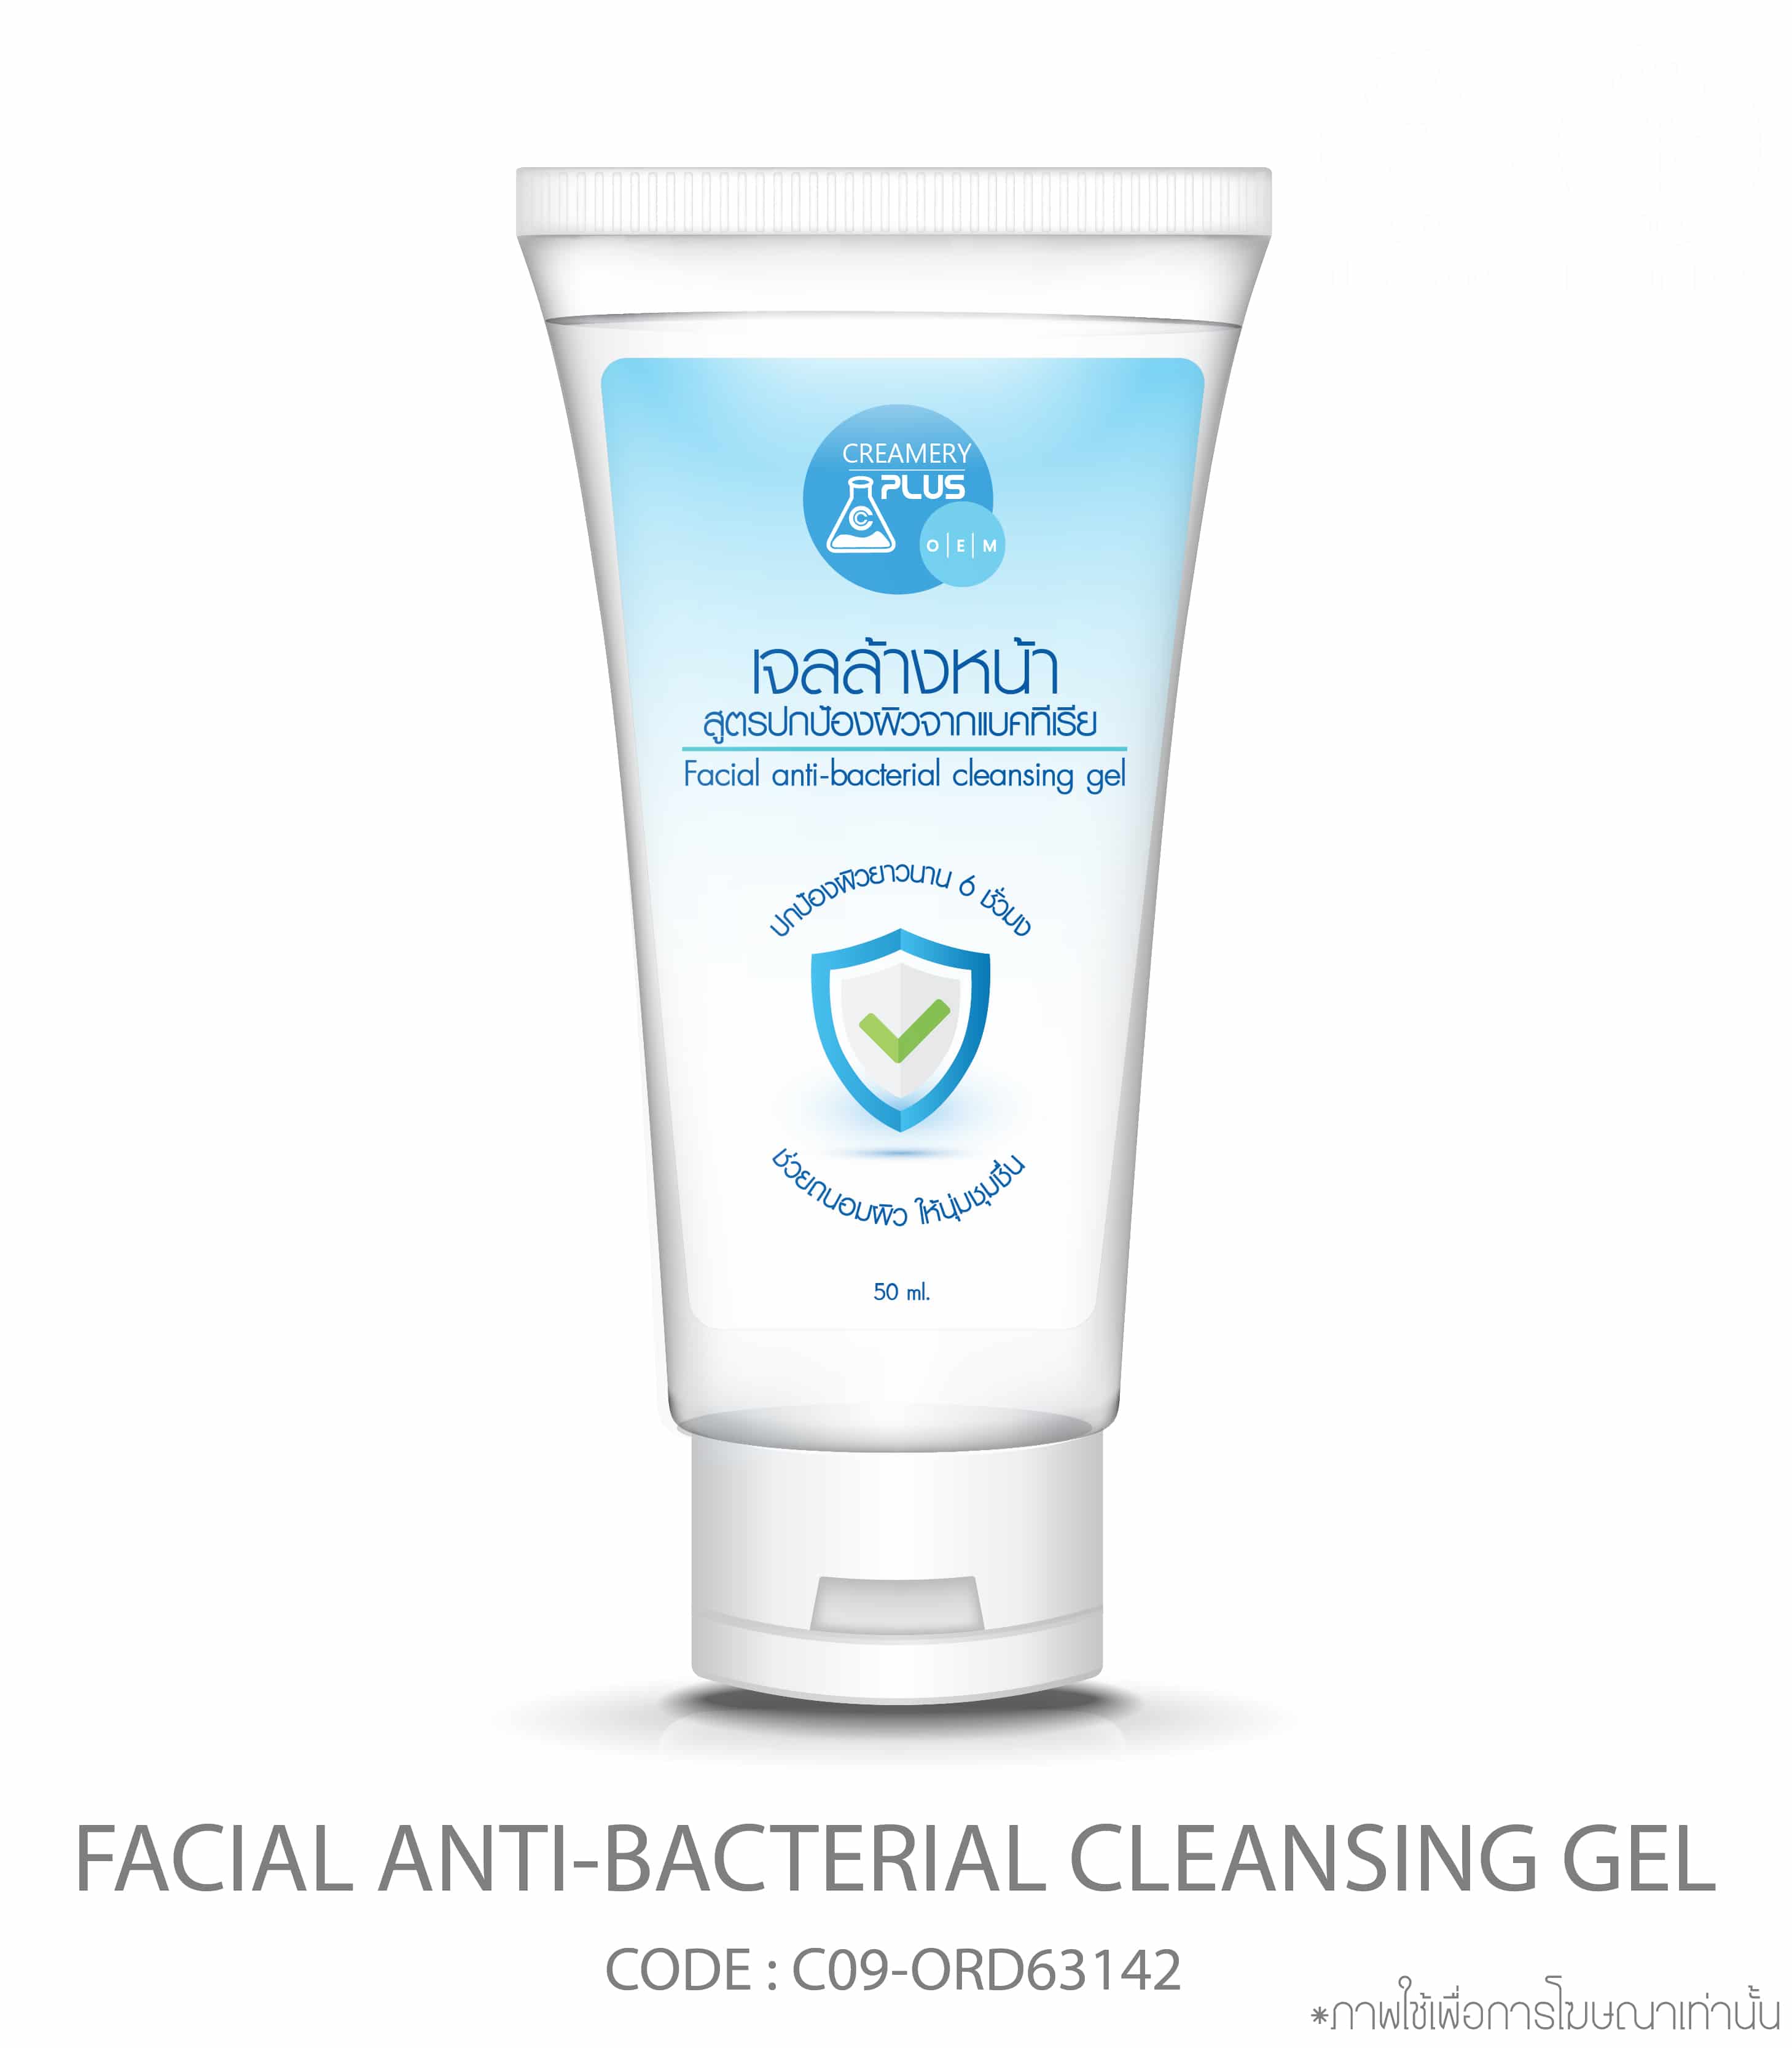 Facial anti-bacterial cleansing gel